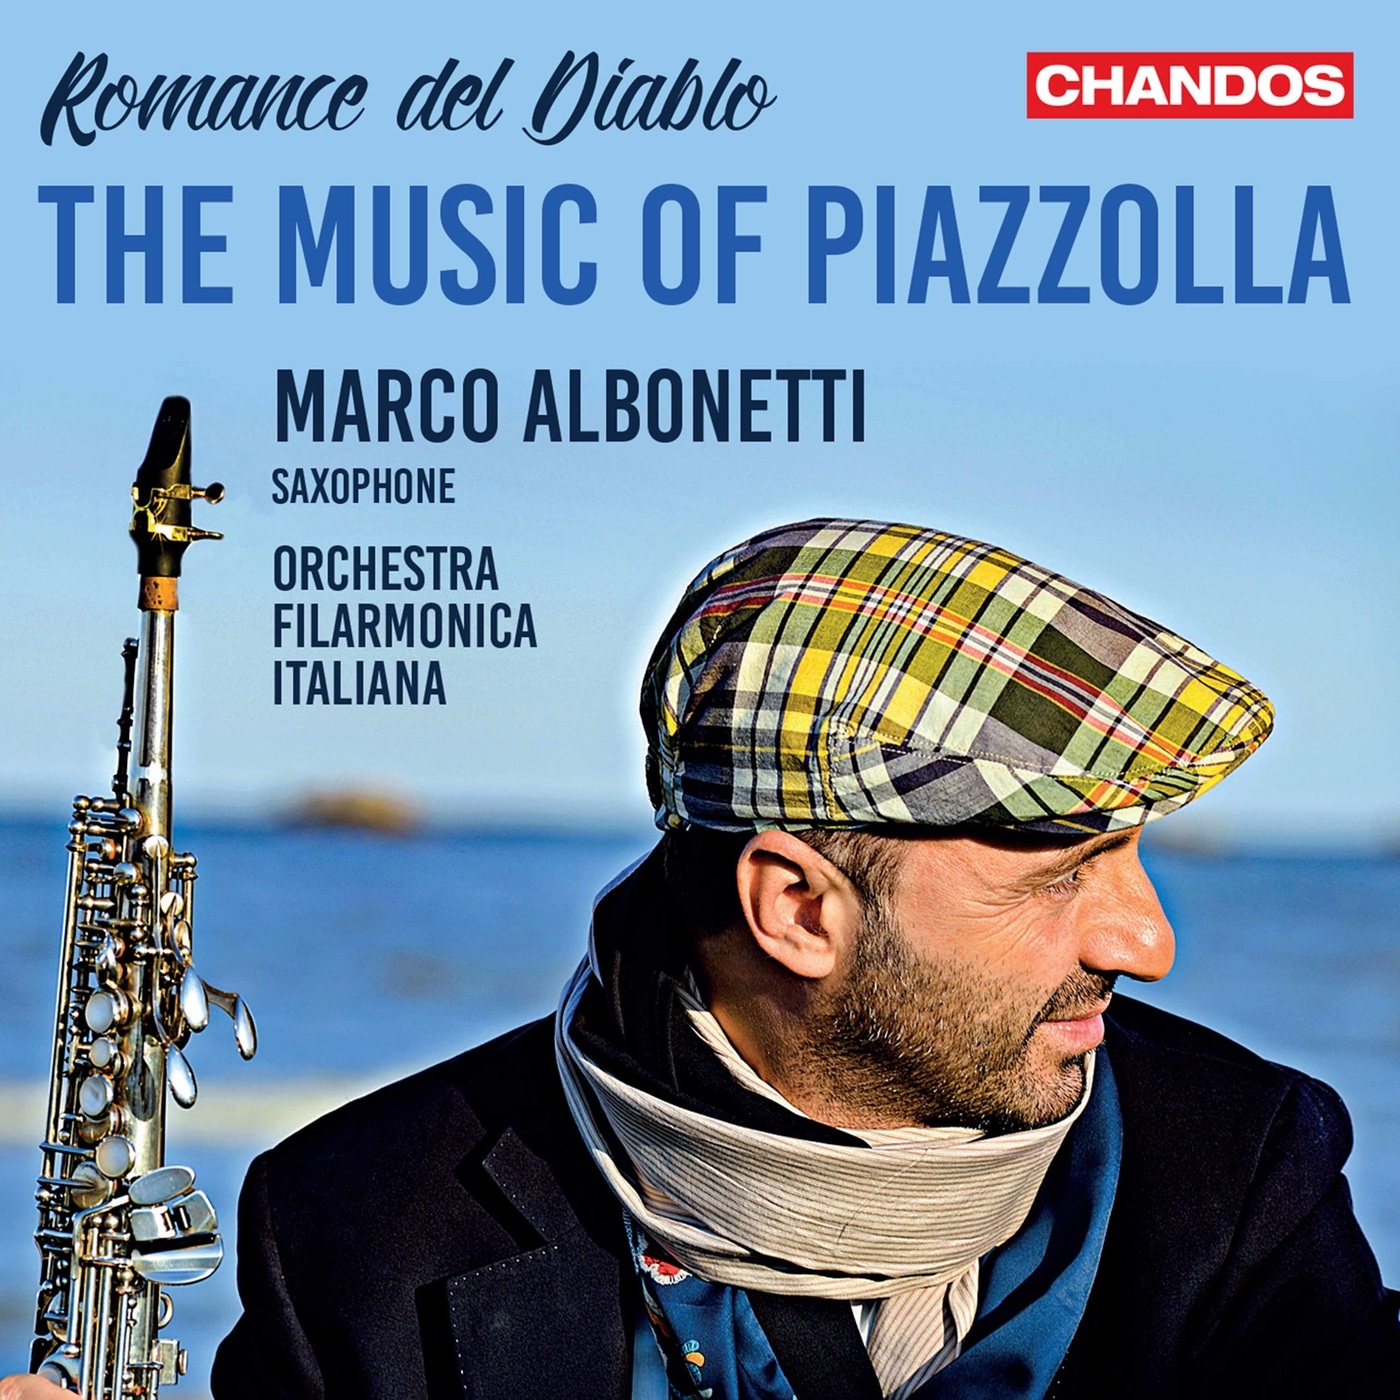 Marco Albonetti & Orchestra Filarmonica Italiana - Romance del Diablo: The Music of Piazzolla (2021) [FLAC 24bit/48kHz]